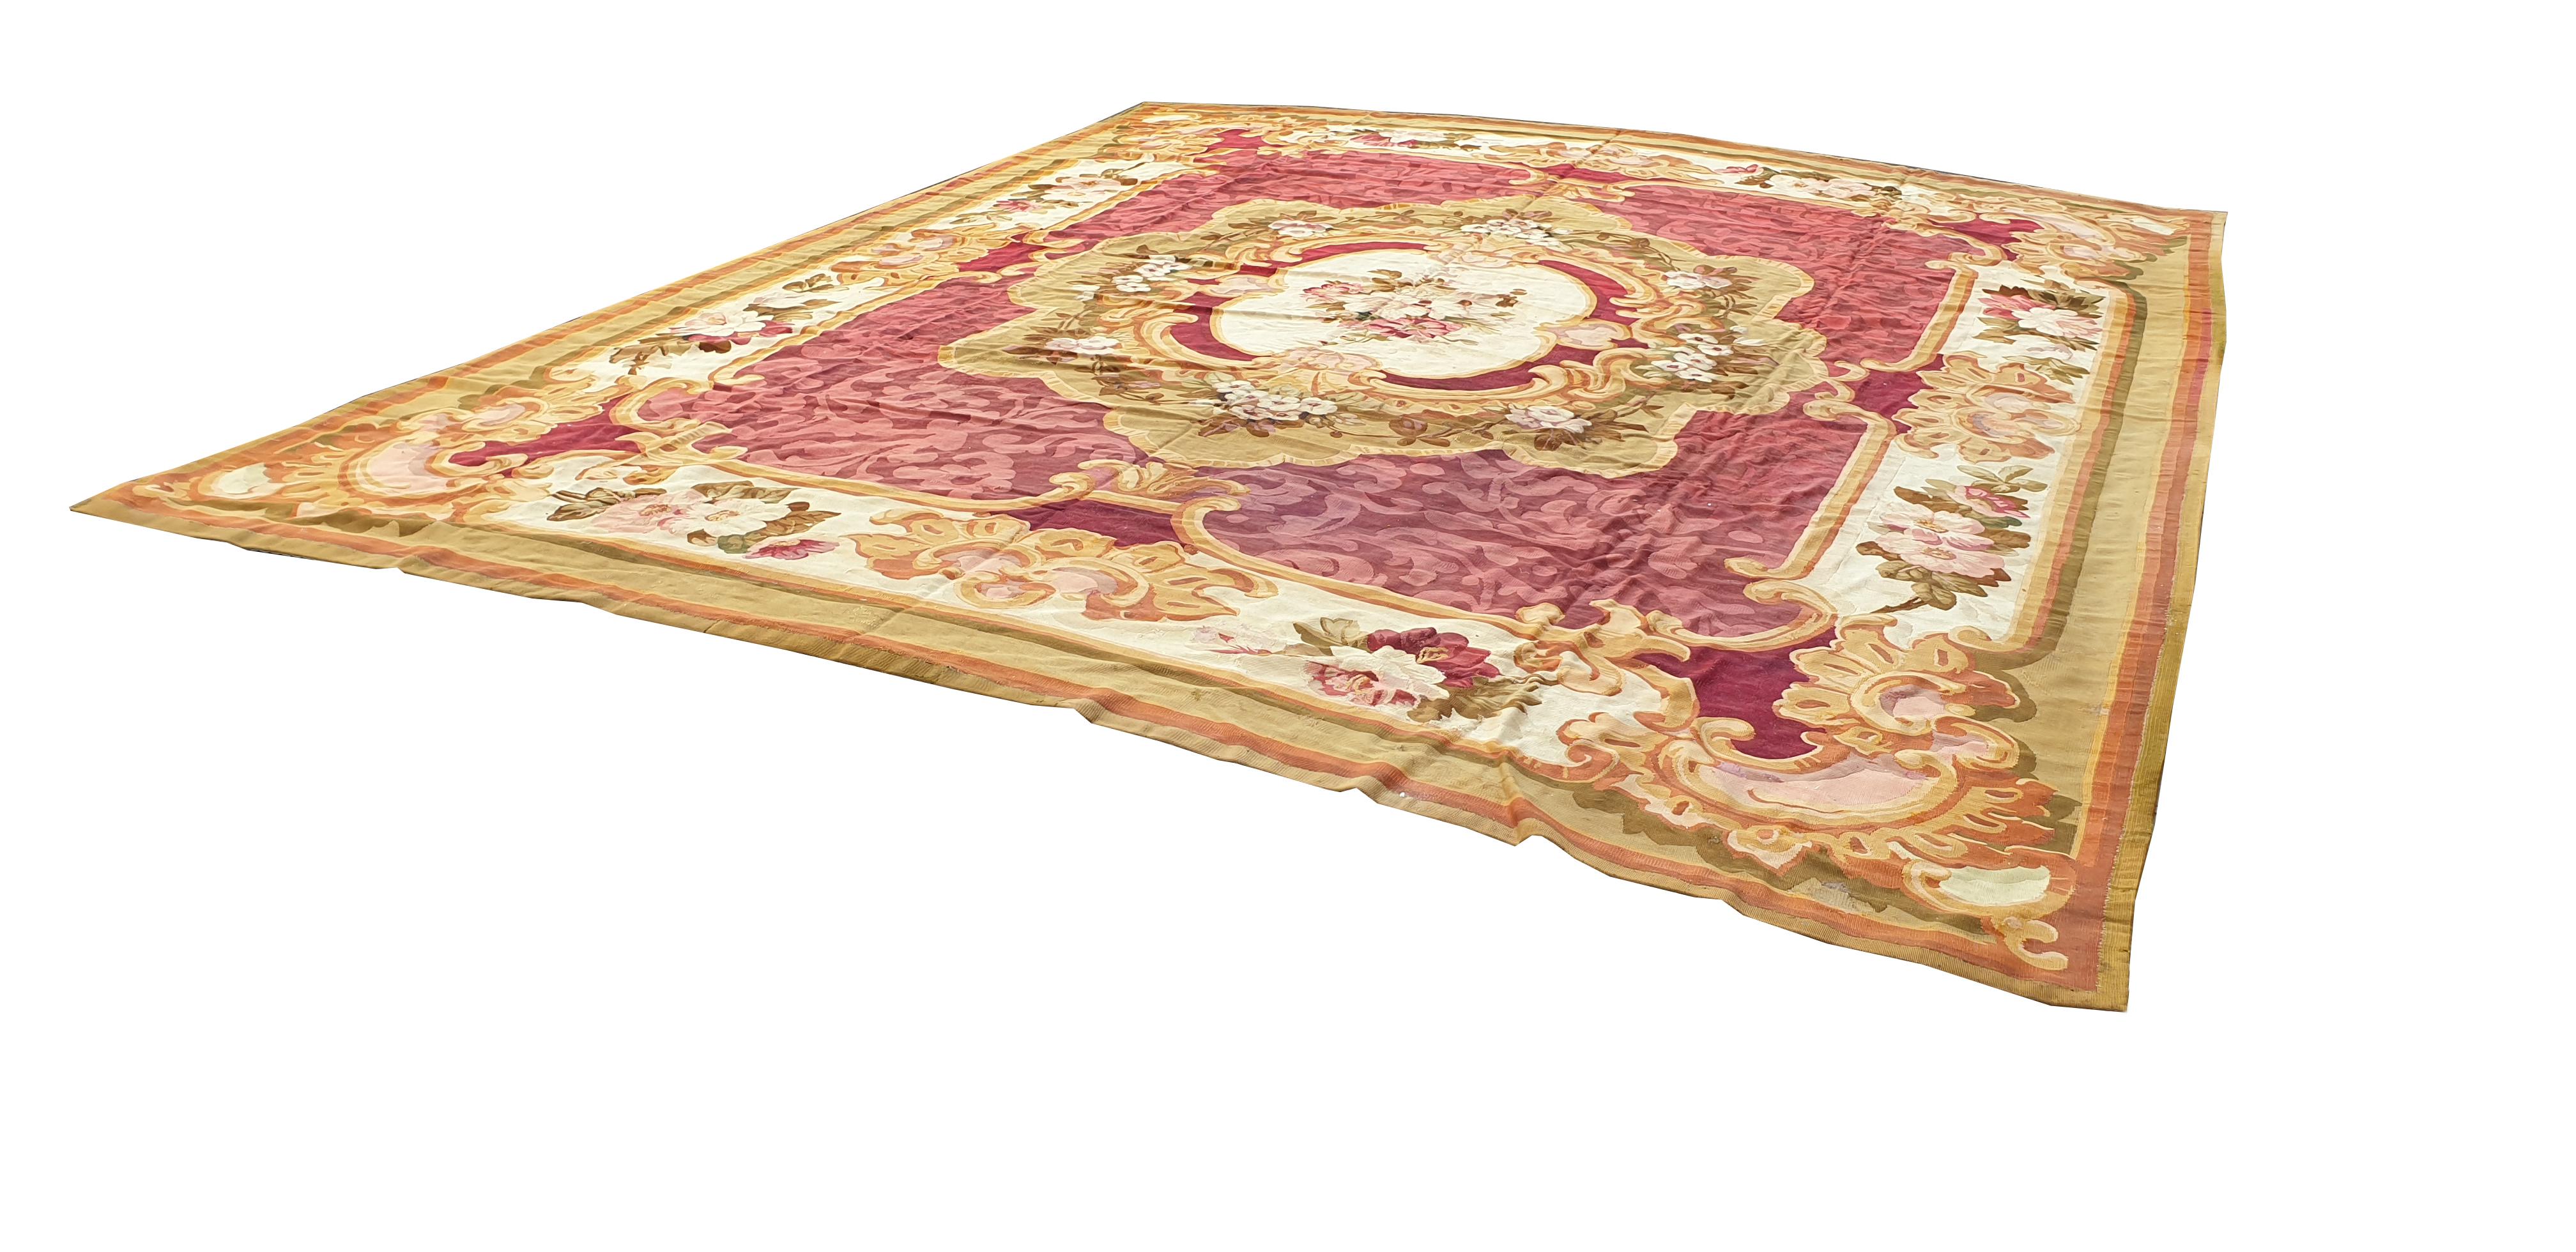 Tapis d'Aubusson du 19ème siècle (napoleon 3) - N 910

A proximité de la Tour Eiffel, nous sommes une entreprise familiale spécialisée dans l'achat, la vente et l'expertise de
tapisseries, tapis, kilims et textiles anciens, modernes et